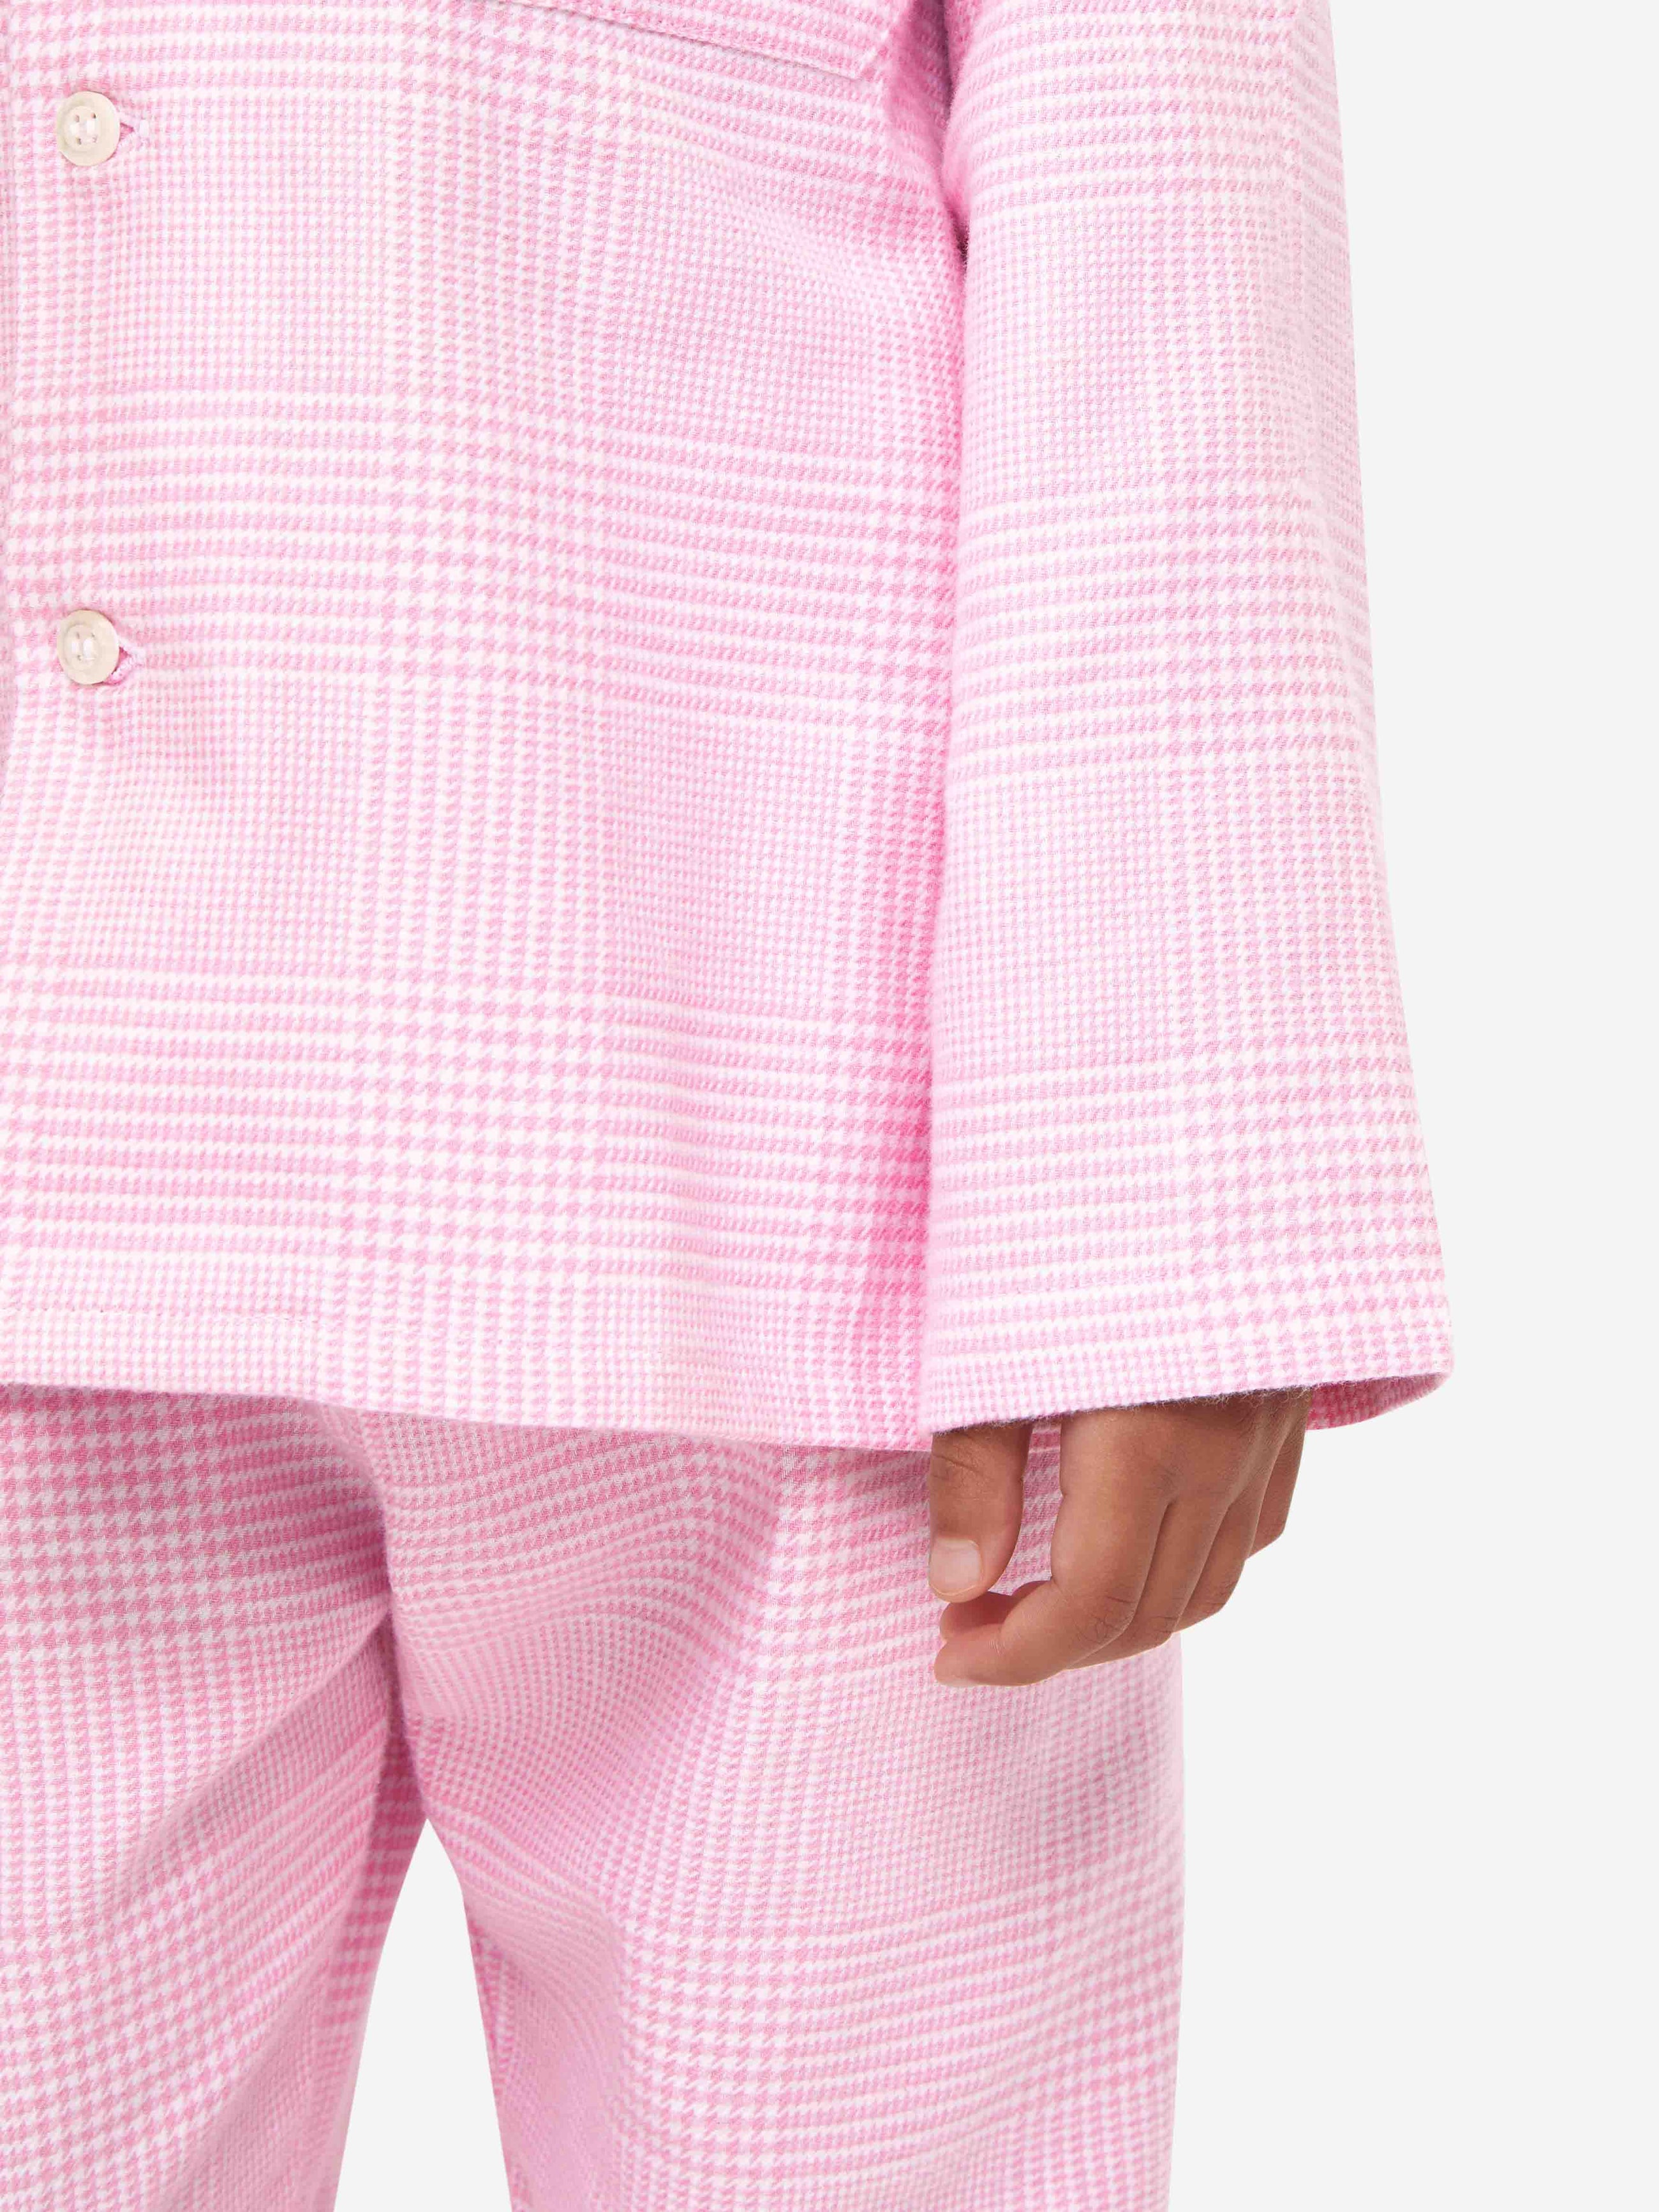 Kids' Pyjamas Kelburn 32 Brushed Cotton Pink